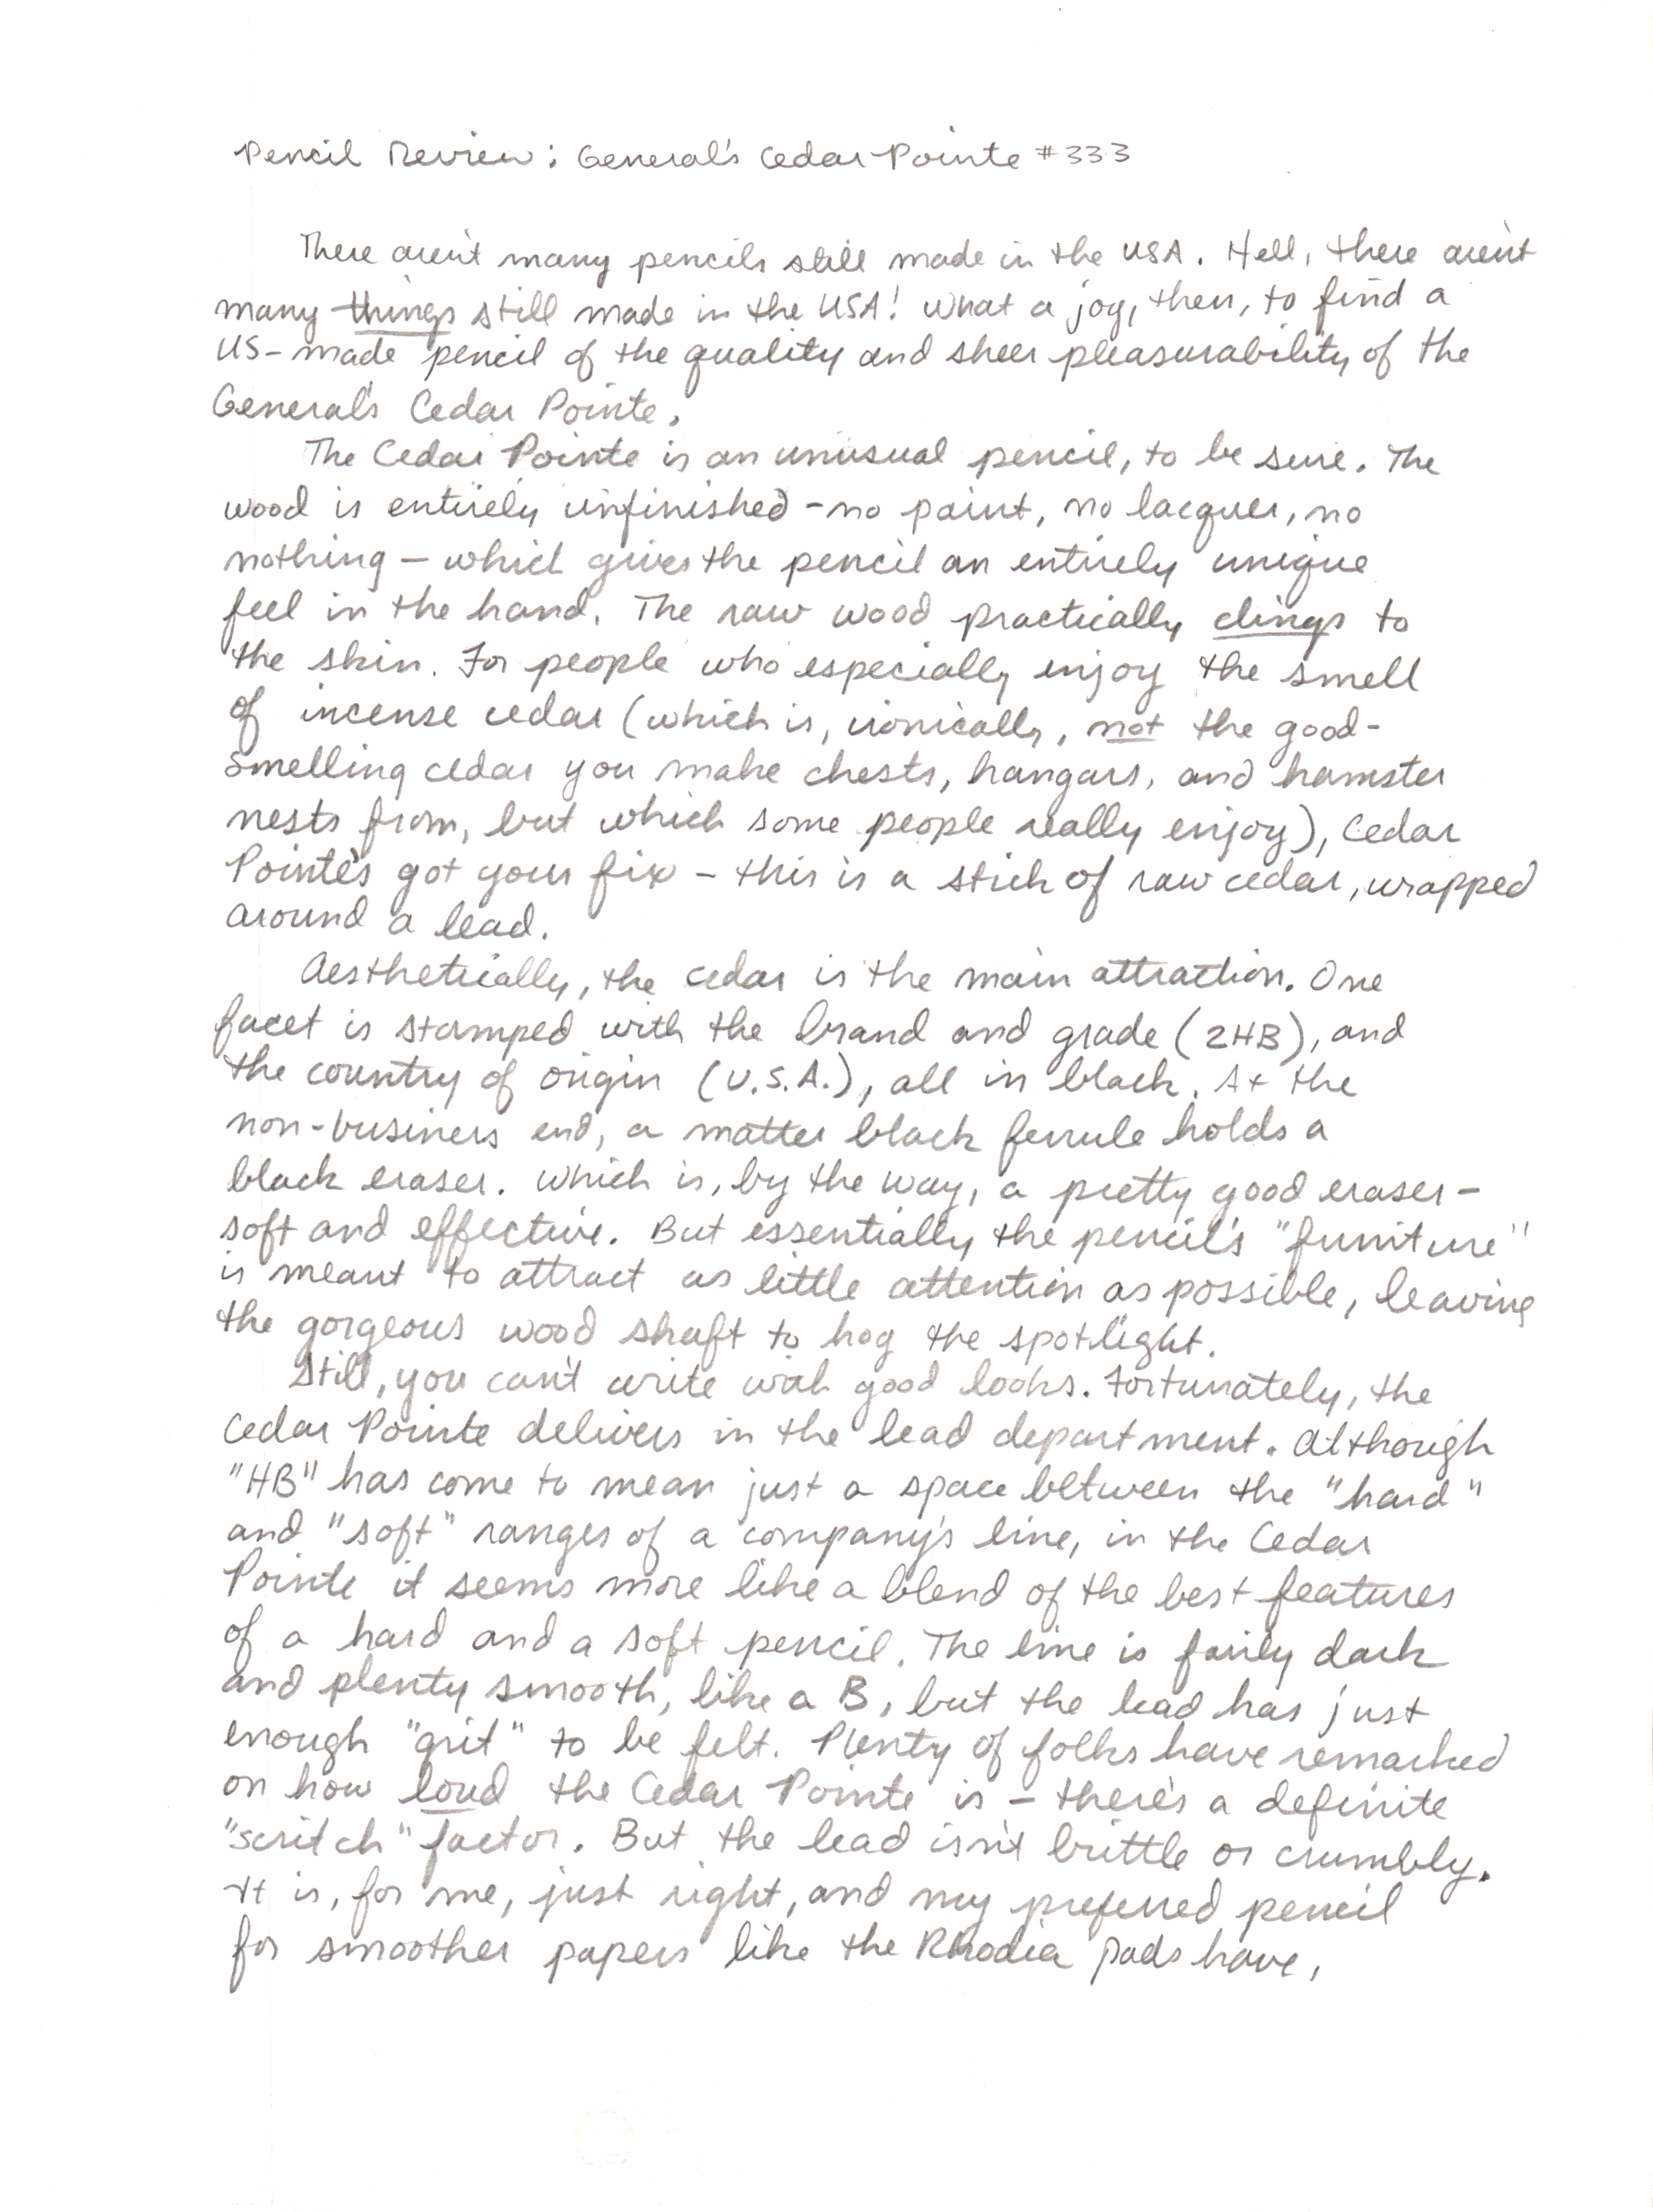 Generals Cedar Pointe handwritten review